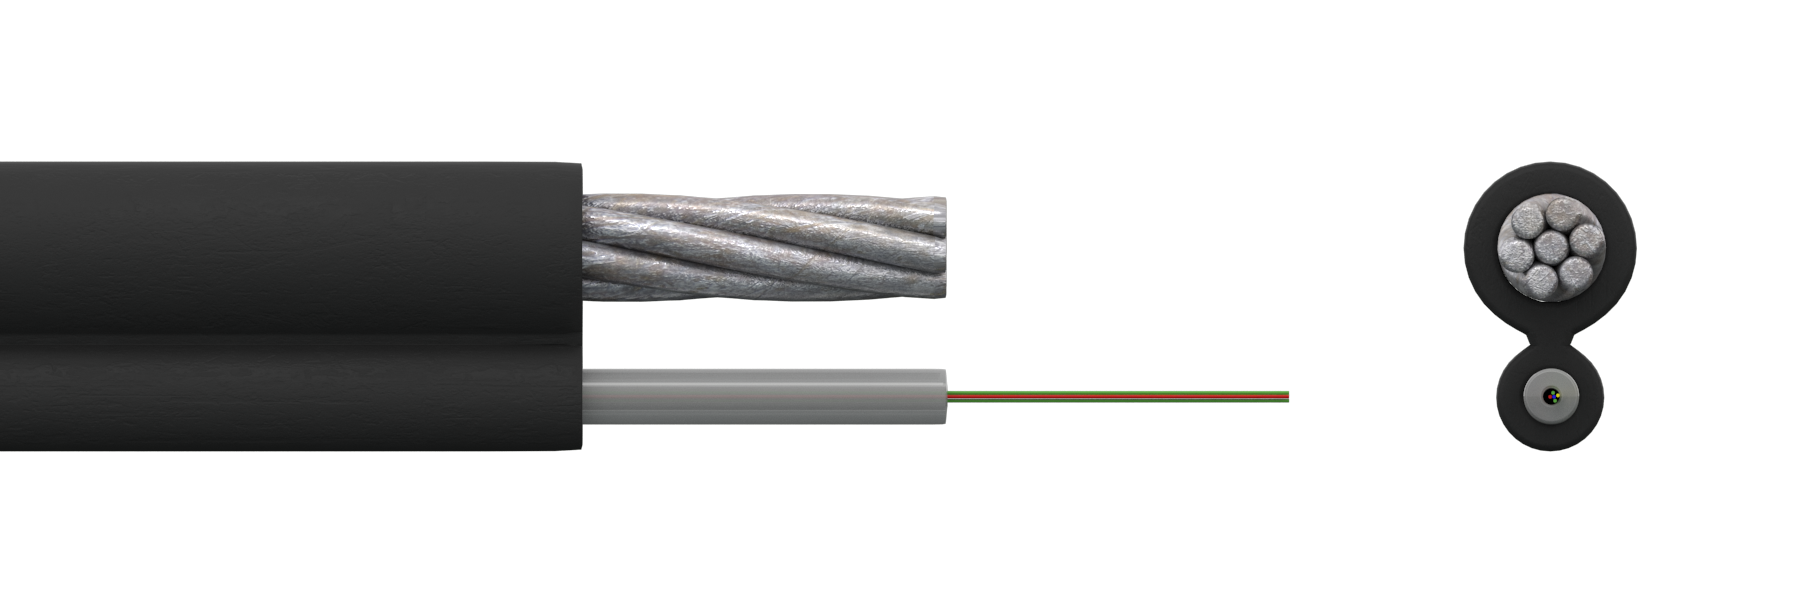 Оптический кабель 8-образный для подвеса СЛ-ОКПЦ-16Е2-6,0